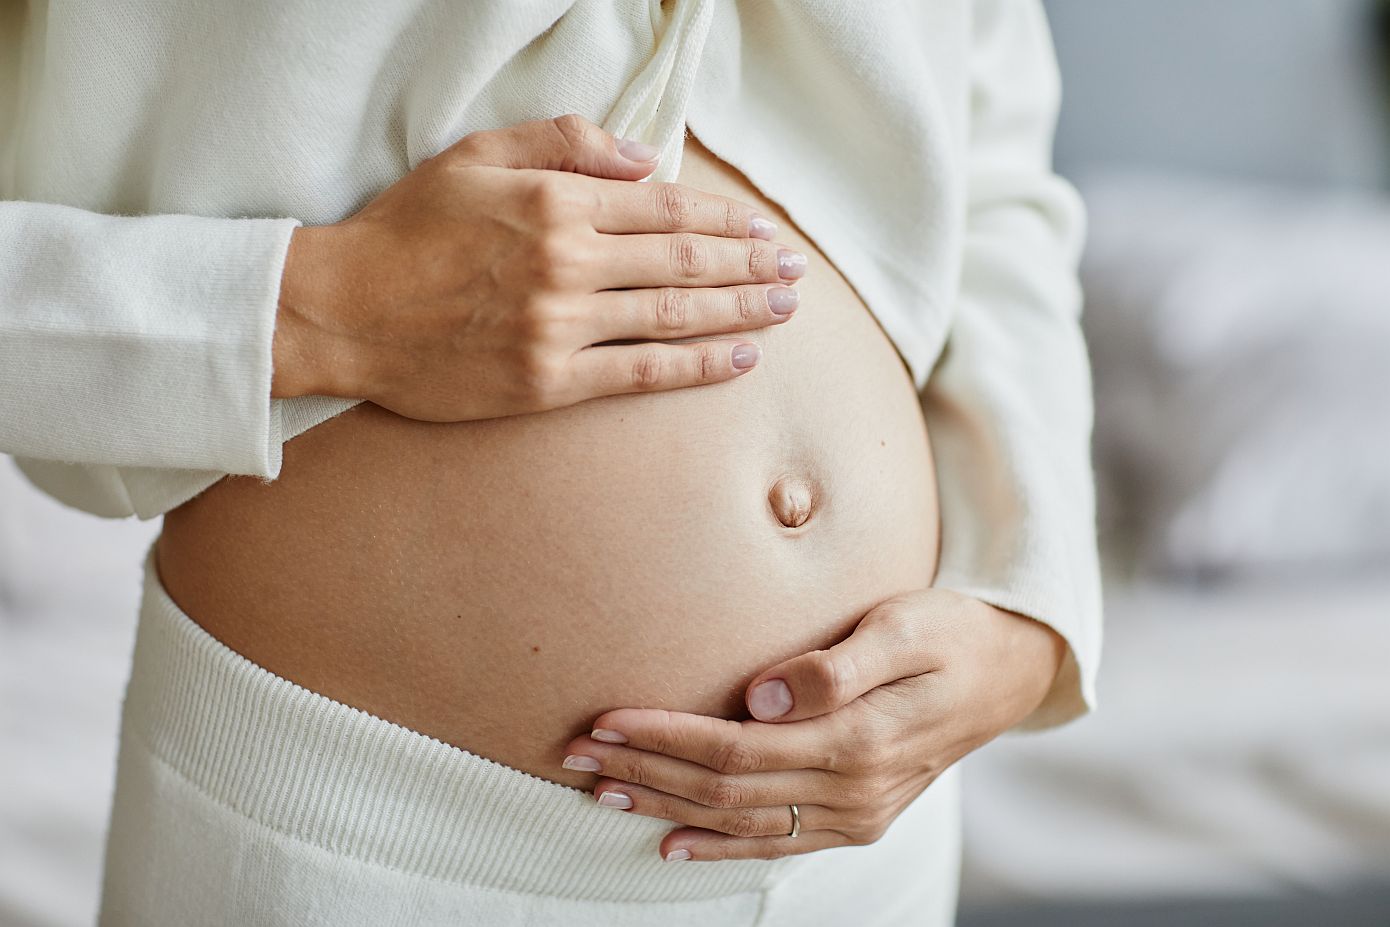 Πώς πρέπει να περιποιείστε την κοιλιά σας κατά την περίοδο της εγκυμοσύνης;